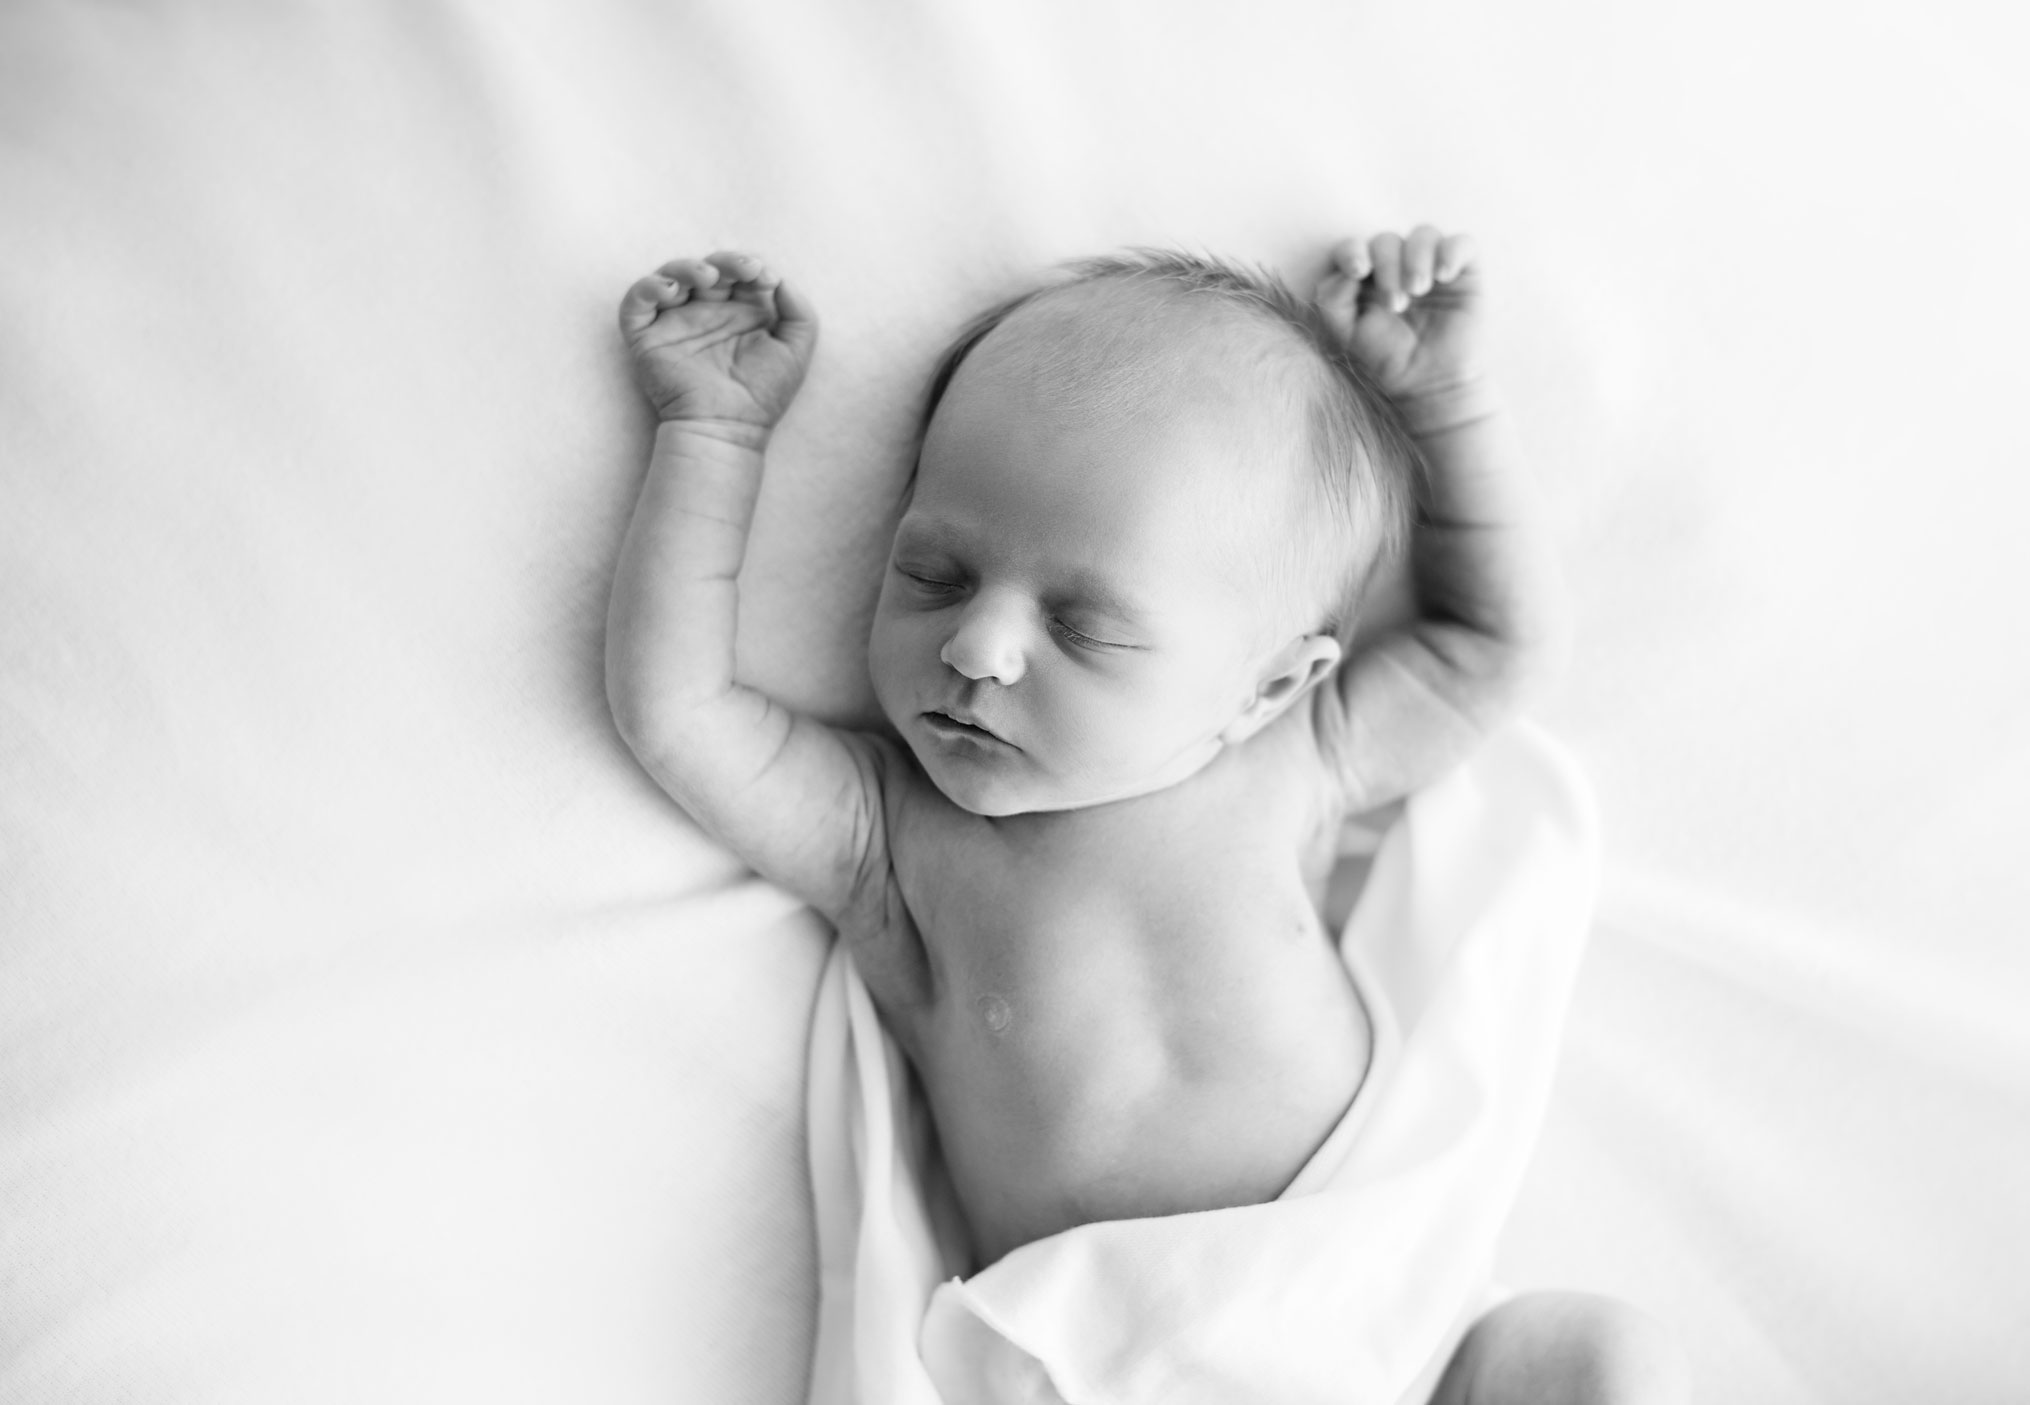 Newborn black and white image